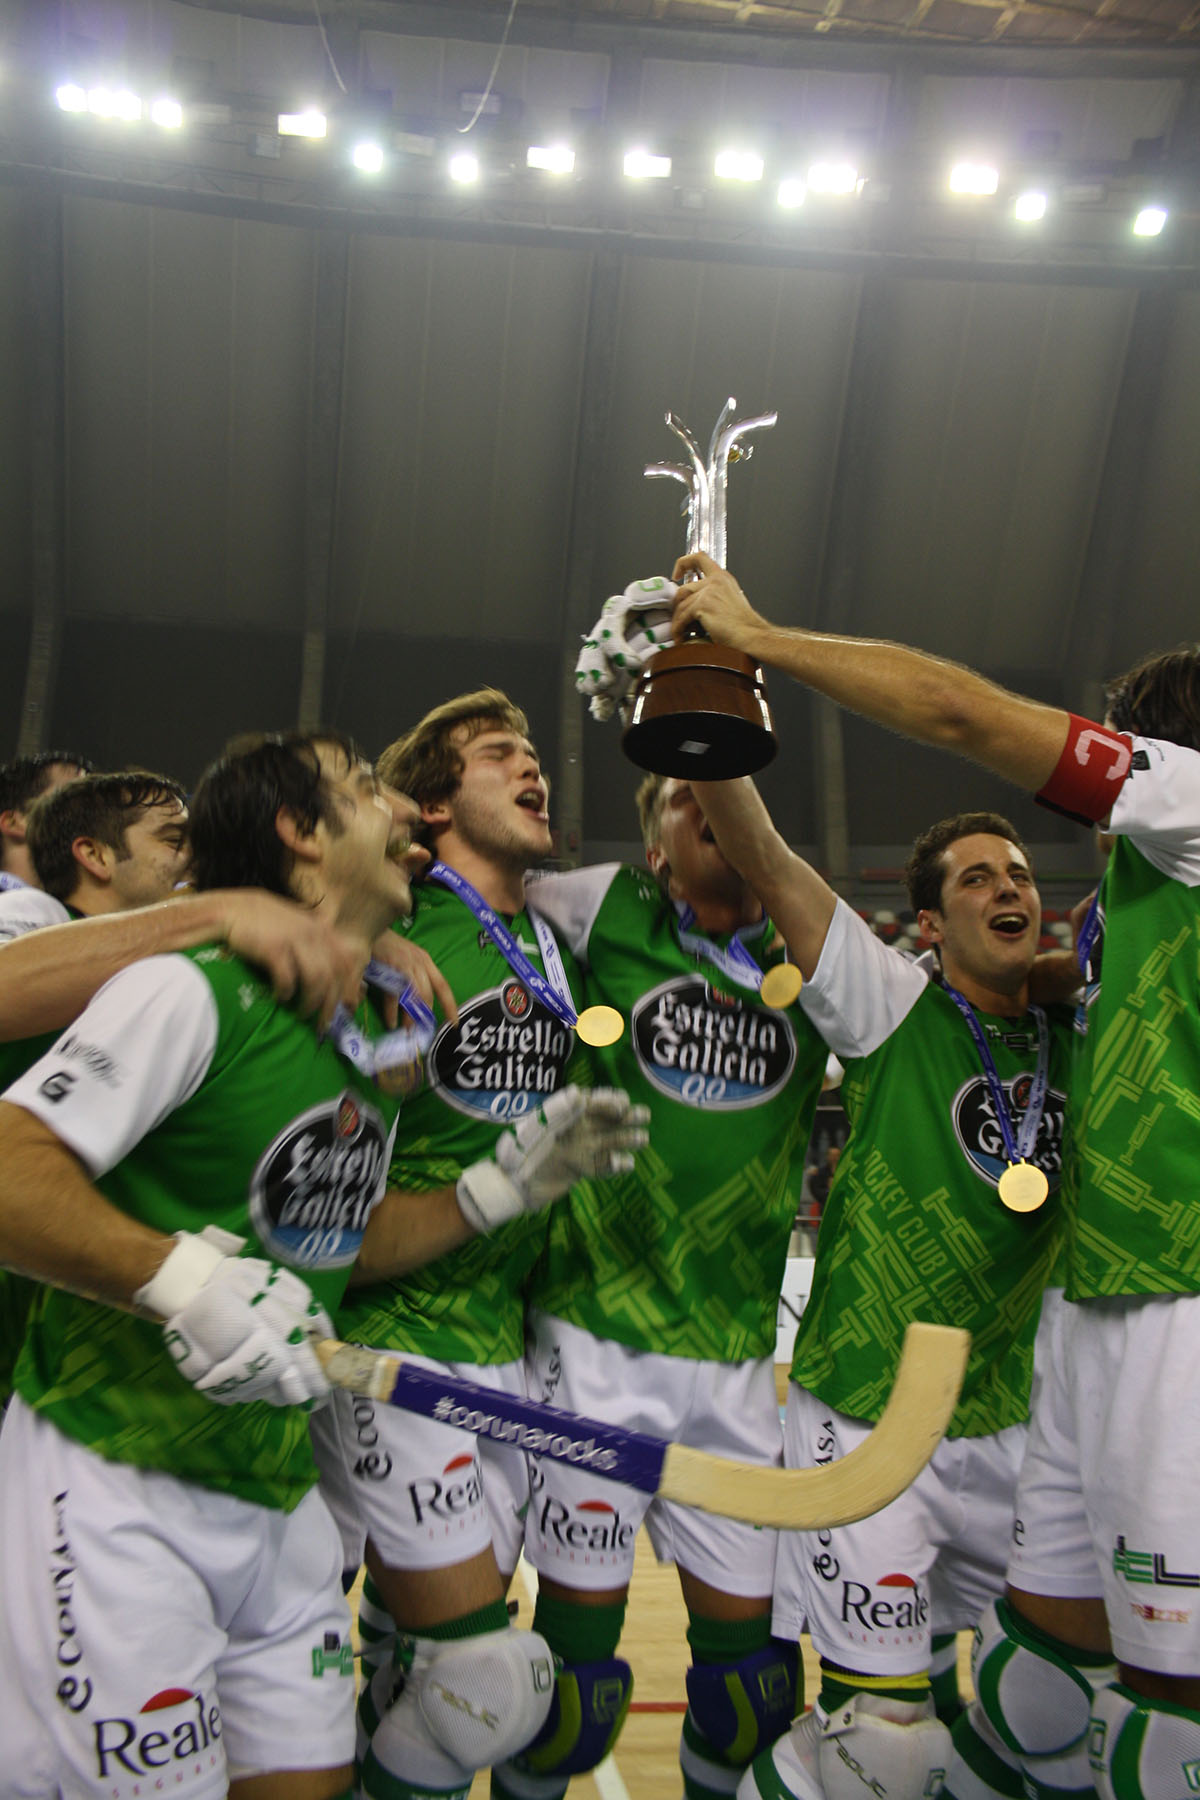 La leyenda continúa… El club más laureado del deporte gallego suma un nuevo titulo